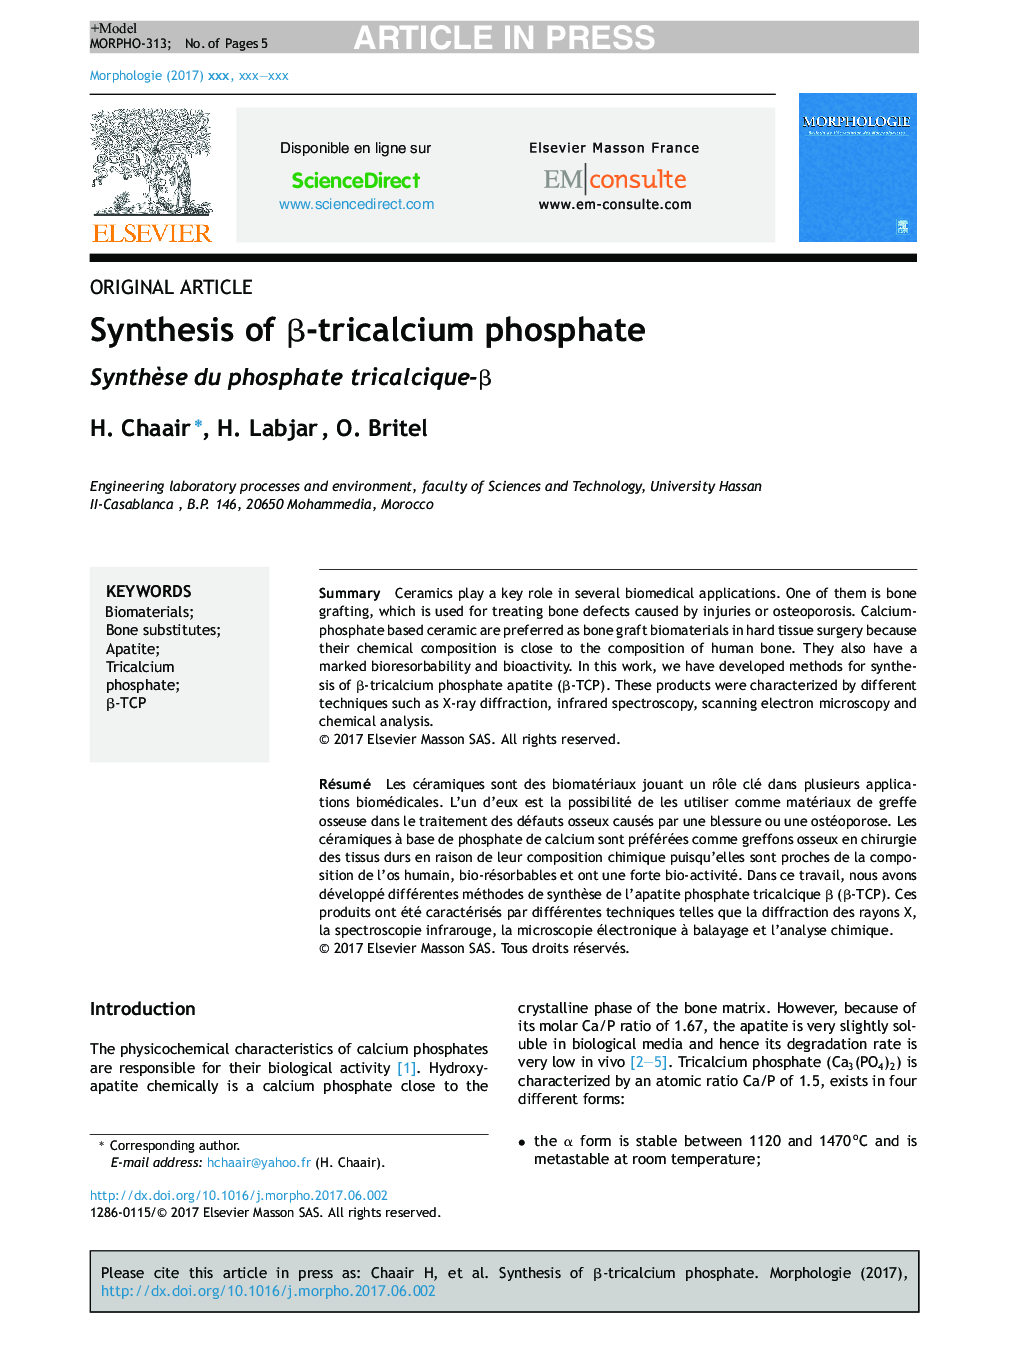 Synthesis of Î²-tricalcium phosphate